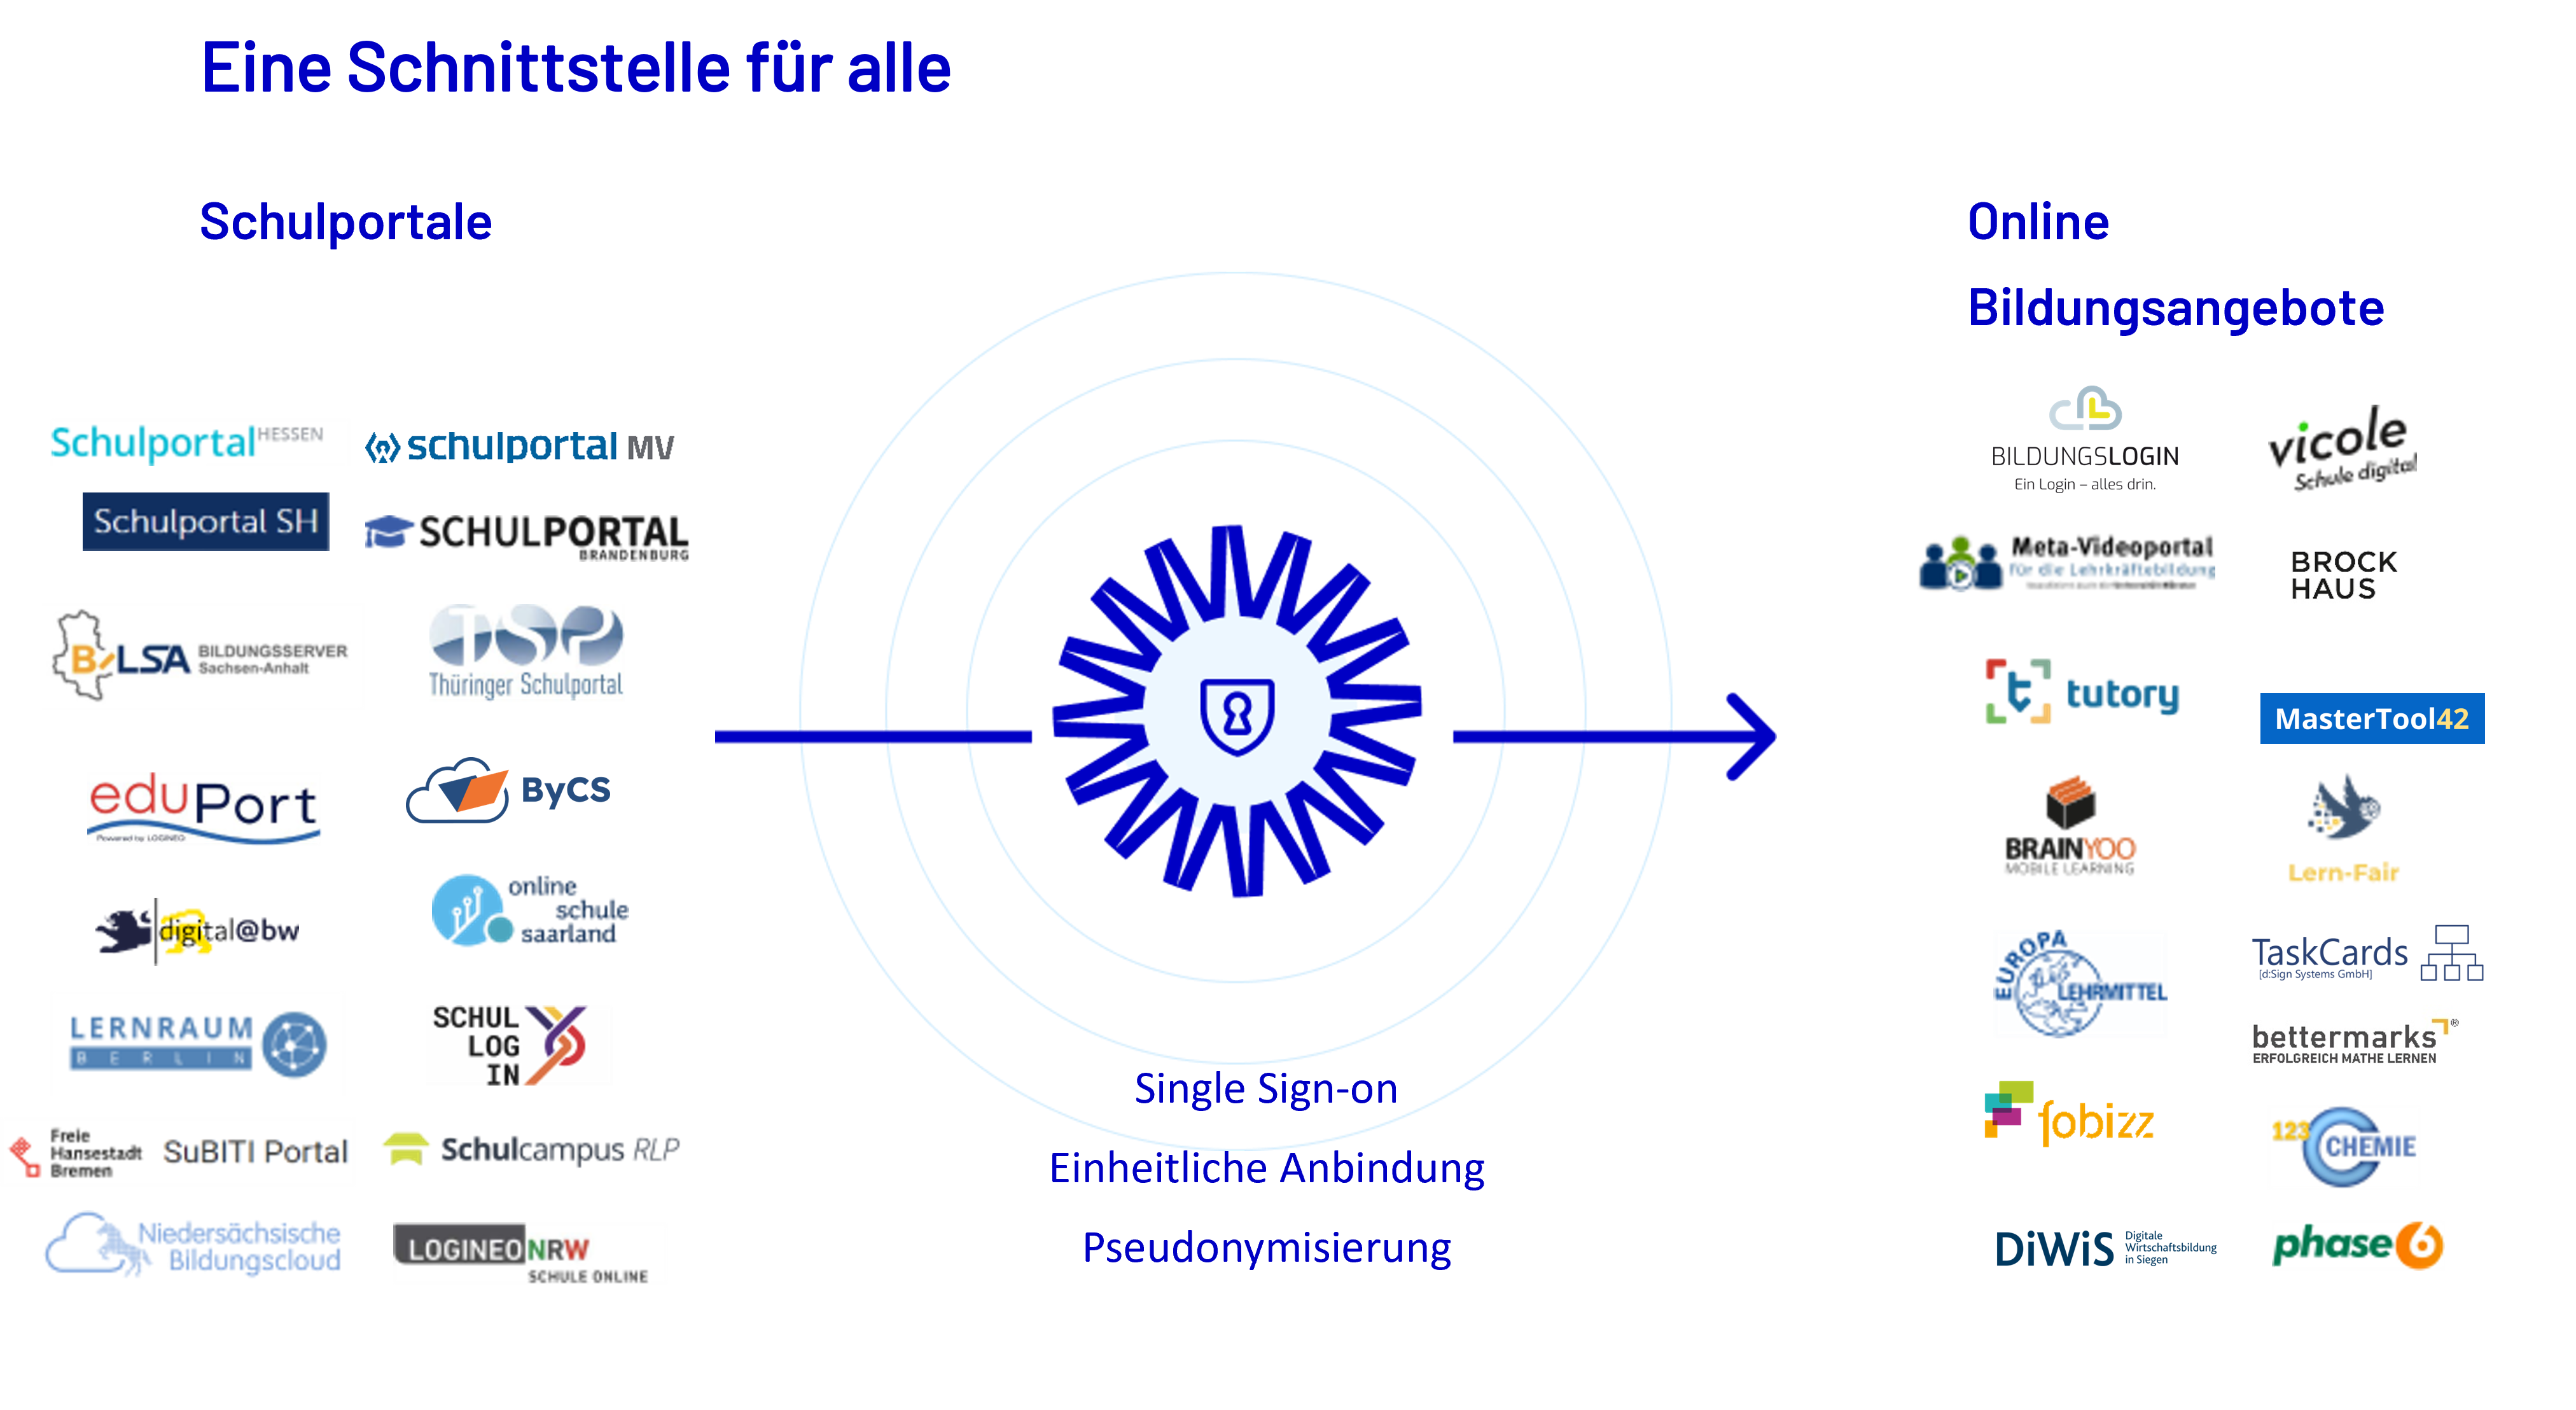 "Eine Schnittstelle für alle" – Grafik zeigt Logos der teilnehmenden Schulportale sowie Online-Bildungsangebote